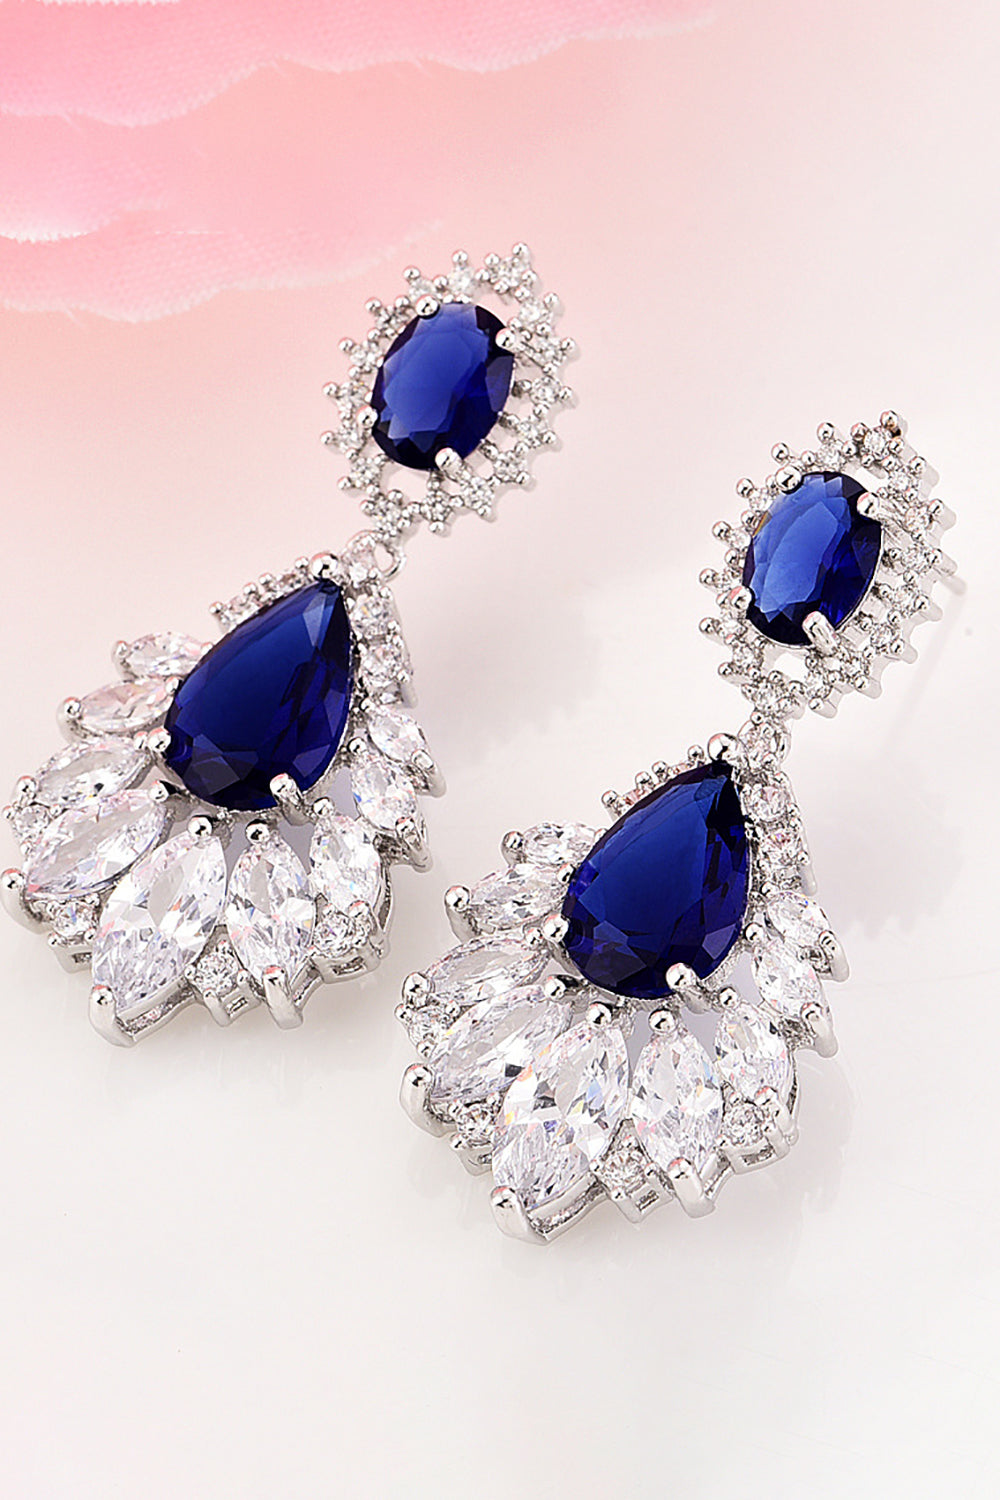 Bleu royal en forme de larme boucles d’oreilles fête bal bijoux